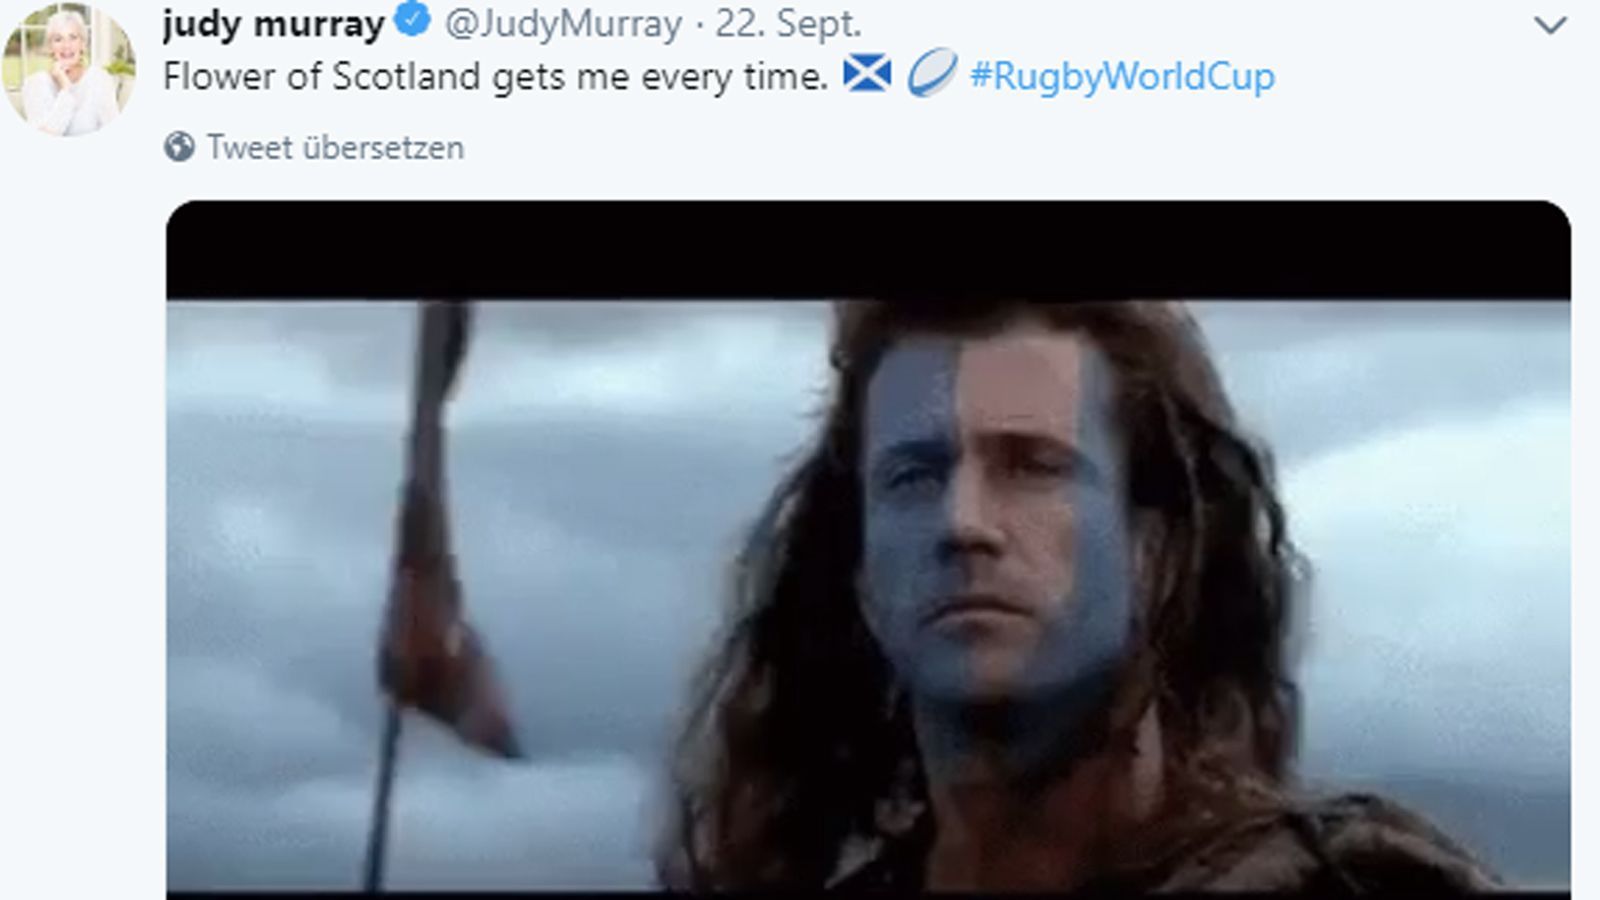 
                <strong>Mutter von Andy Murray</strong><br>
                Die Mutter von Tennis-Ikone Andy Murray drückt nicht nur ihrem Sohn auf dem Tennisplatz die Daumen, sondern auch der schottischen Nationalmannschaft bei der Rugby-WM. 
              